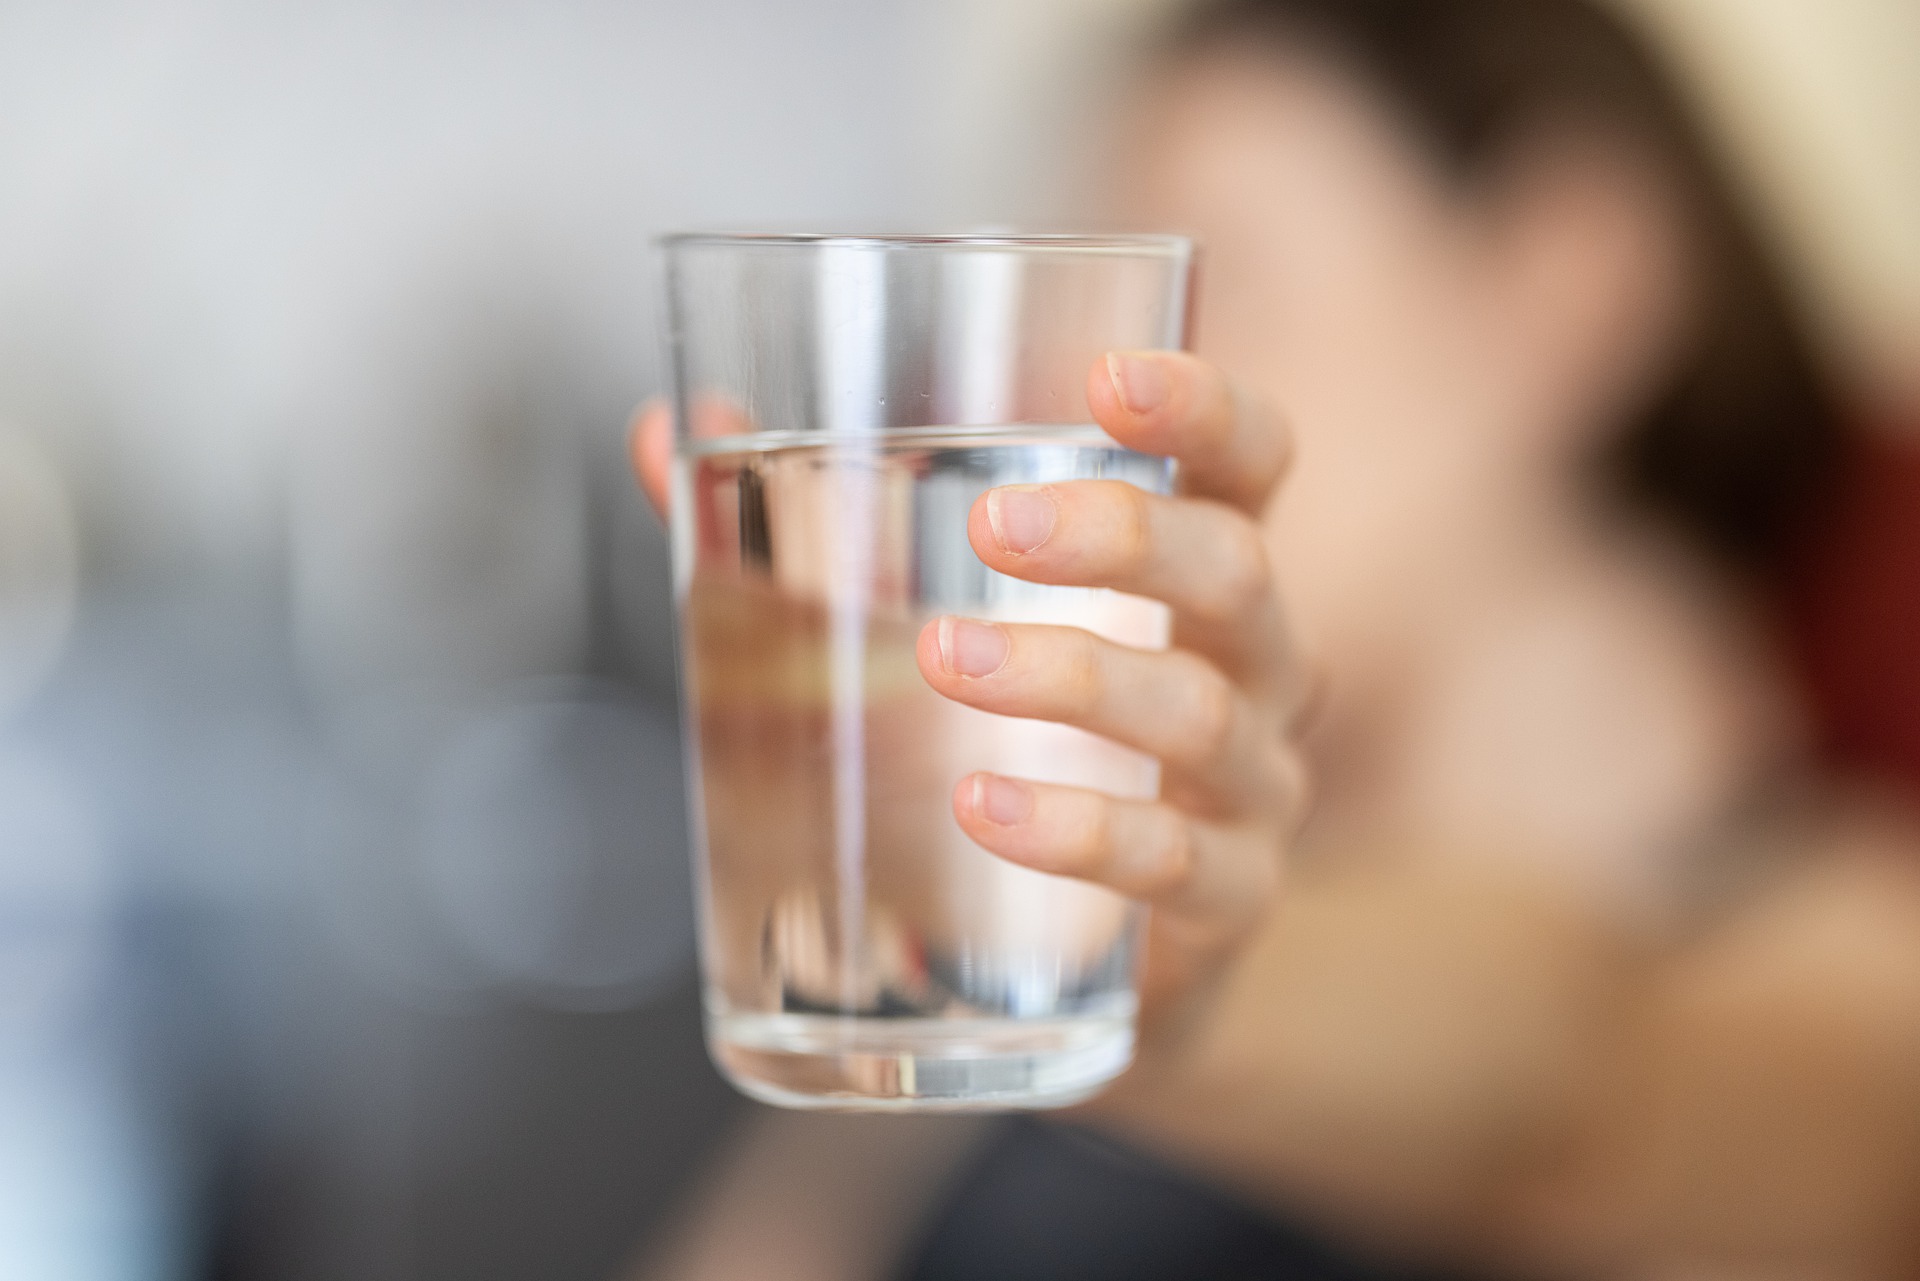 Ilustrasi: Minum air untuk penuhi cairan saat puasa. (Pixabay)